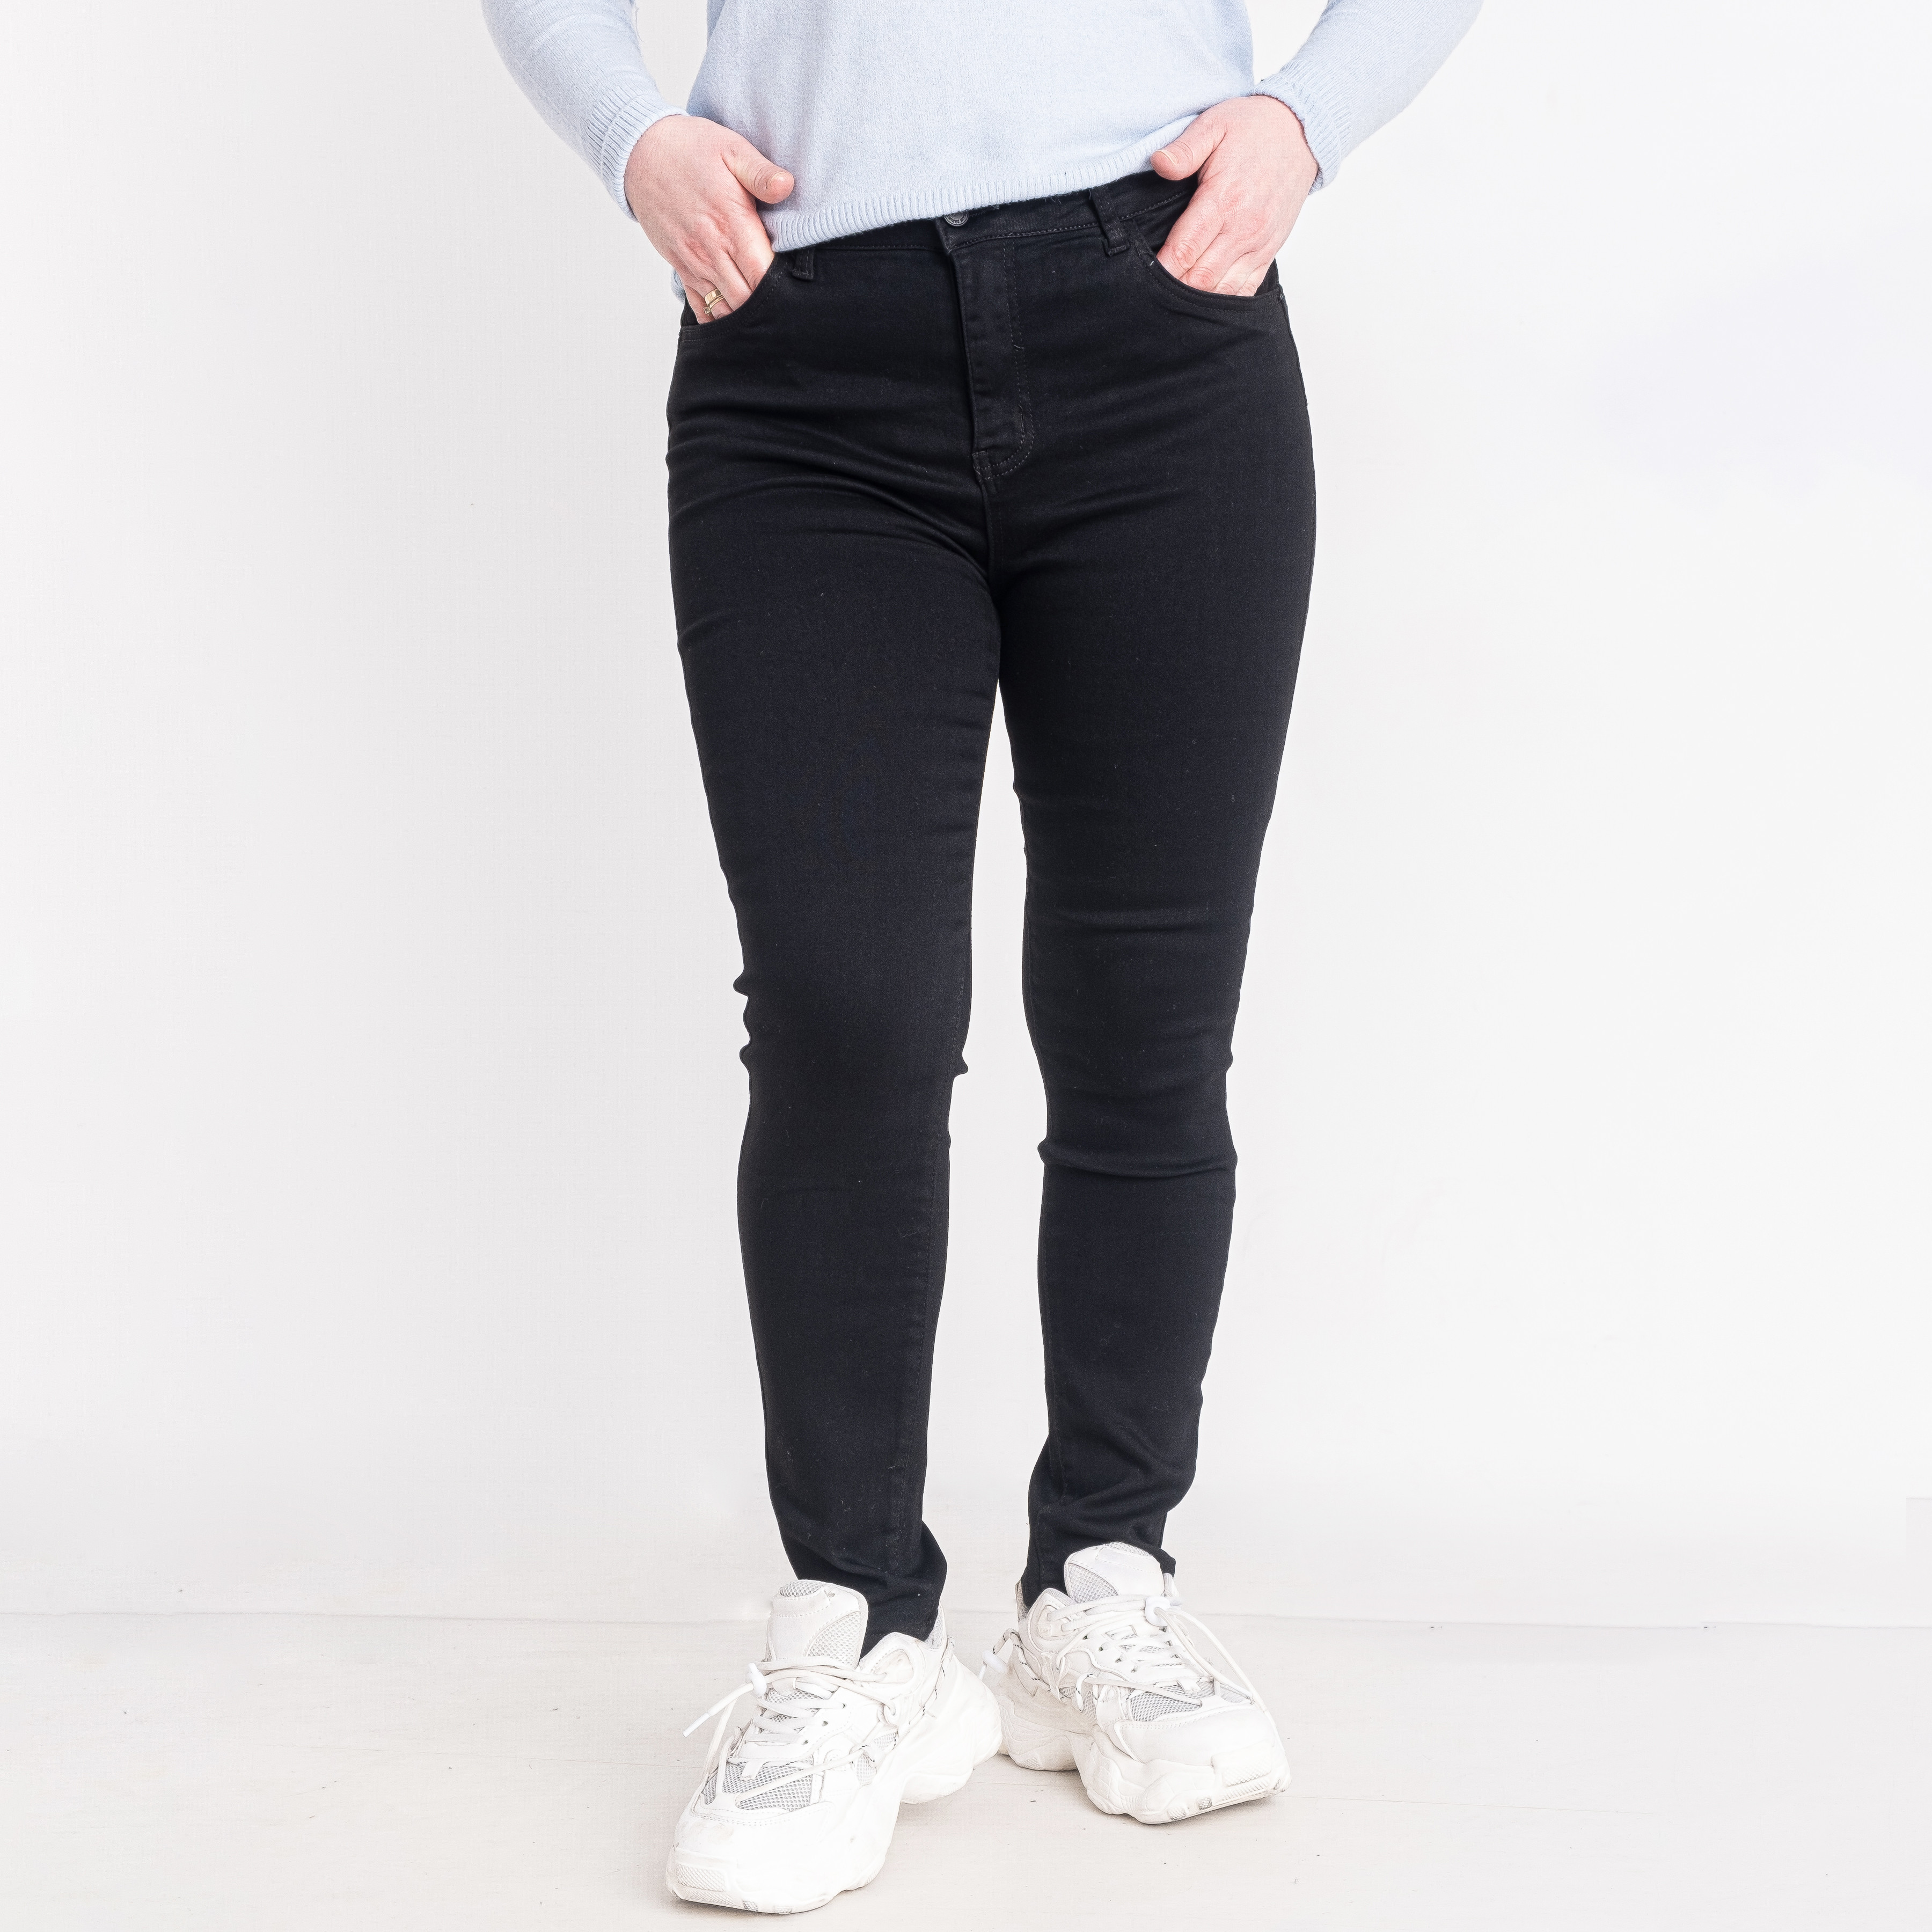 0020 черные женские джинсы (NEW JEANS, стрейчевые, 6 ед. размеры батал: 31. 32. 33. 34. 36. 38)